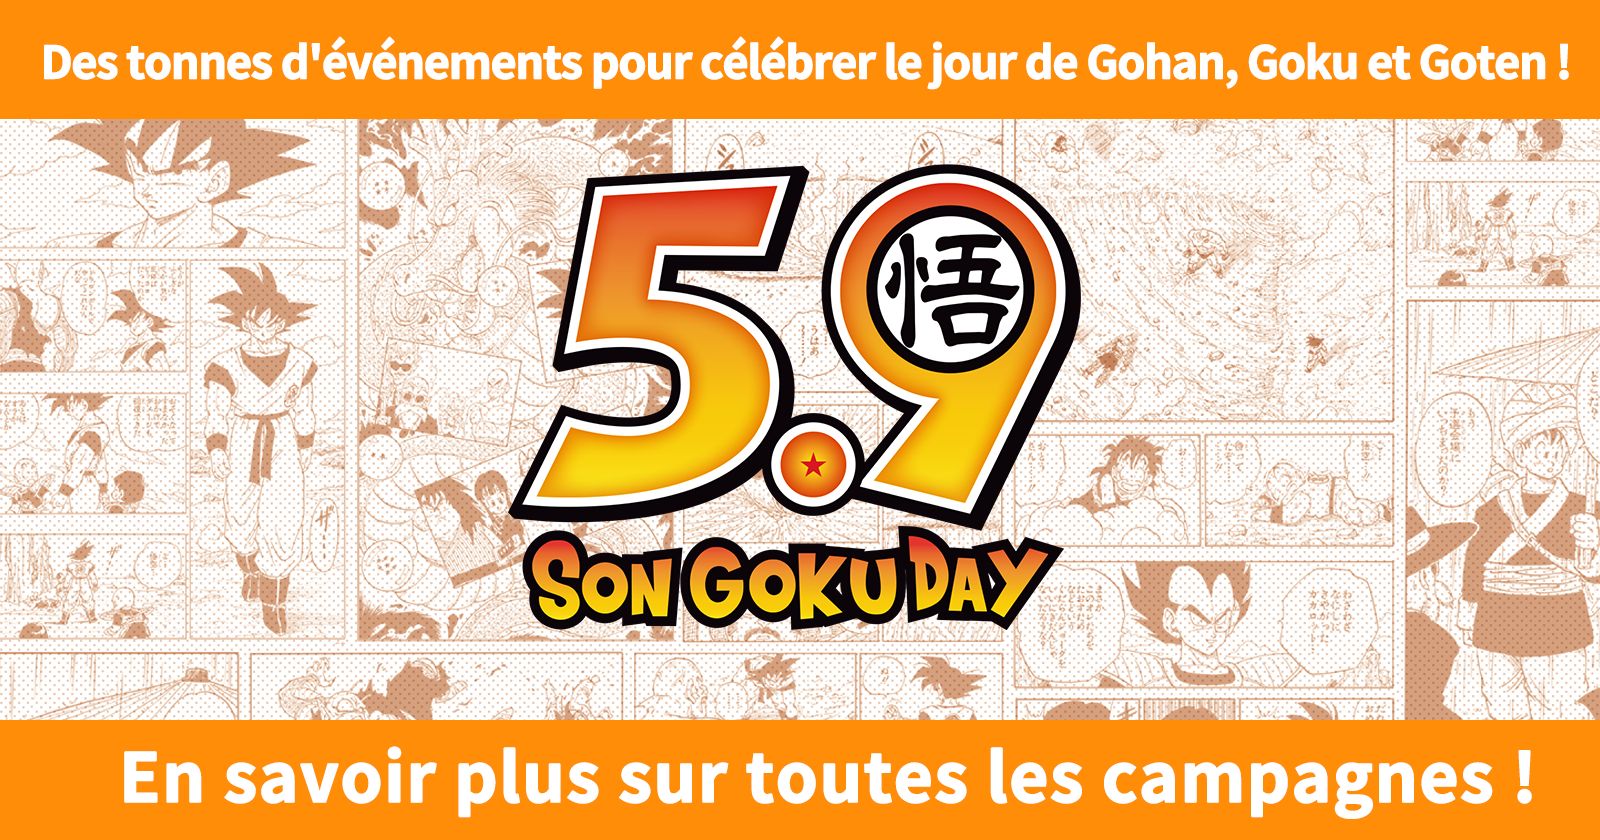 Informations sur la campagne Gohan/Goku/Goten Day ! Lisez la suite pour savoir ce qui se passe cette année !